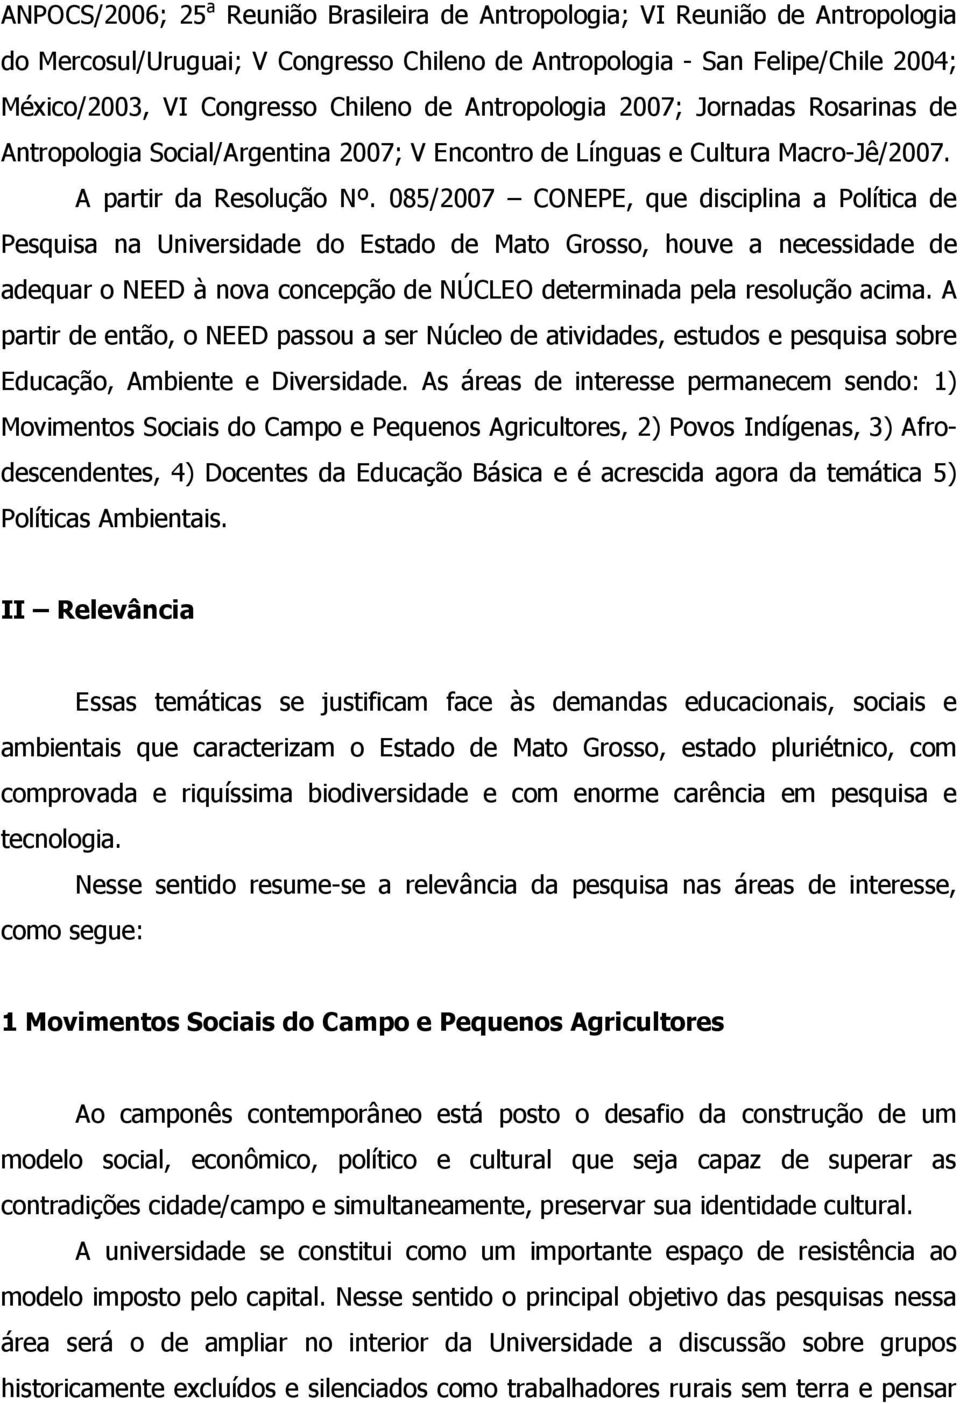 085/2007 CONEPE, que disciplina a Política de Pesquisa na Universidade do Estado de Mato Grosso, houve a necessidade de adequar o NEED à nova concepção de NÚCLEO determinada pela resolução acima.